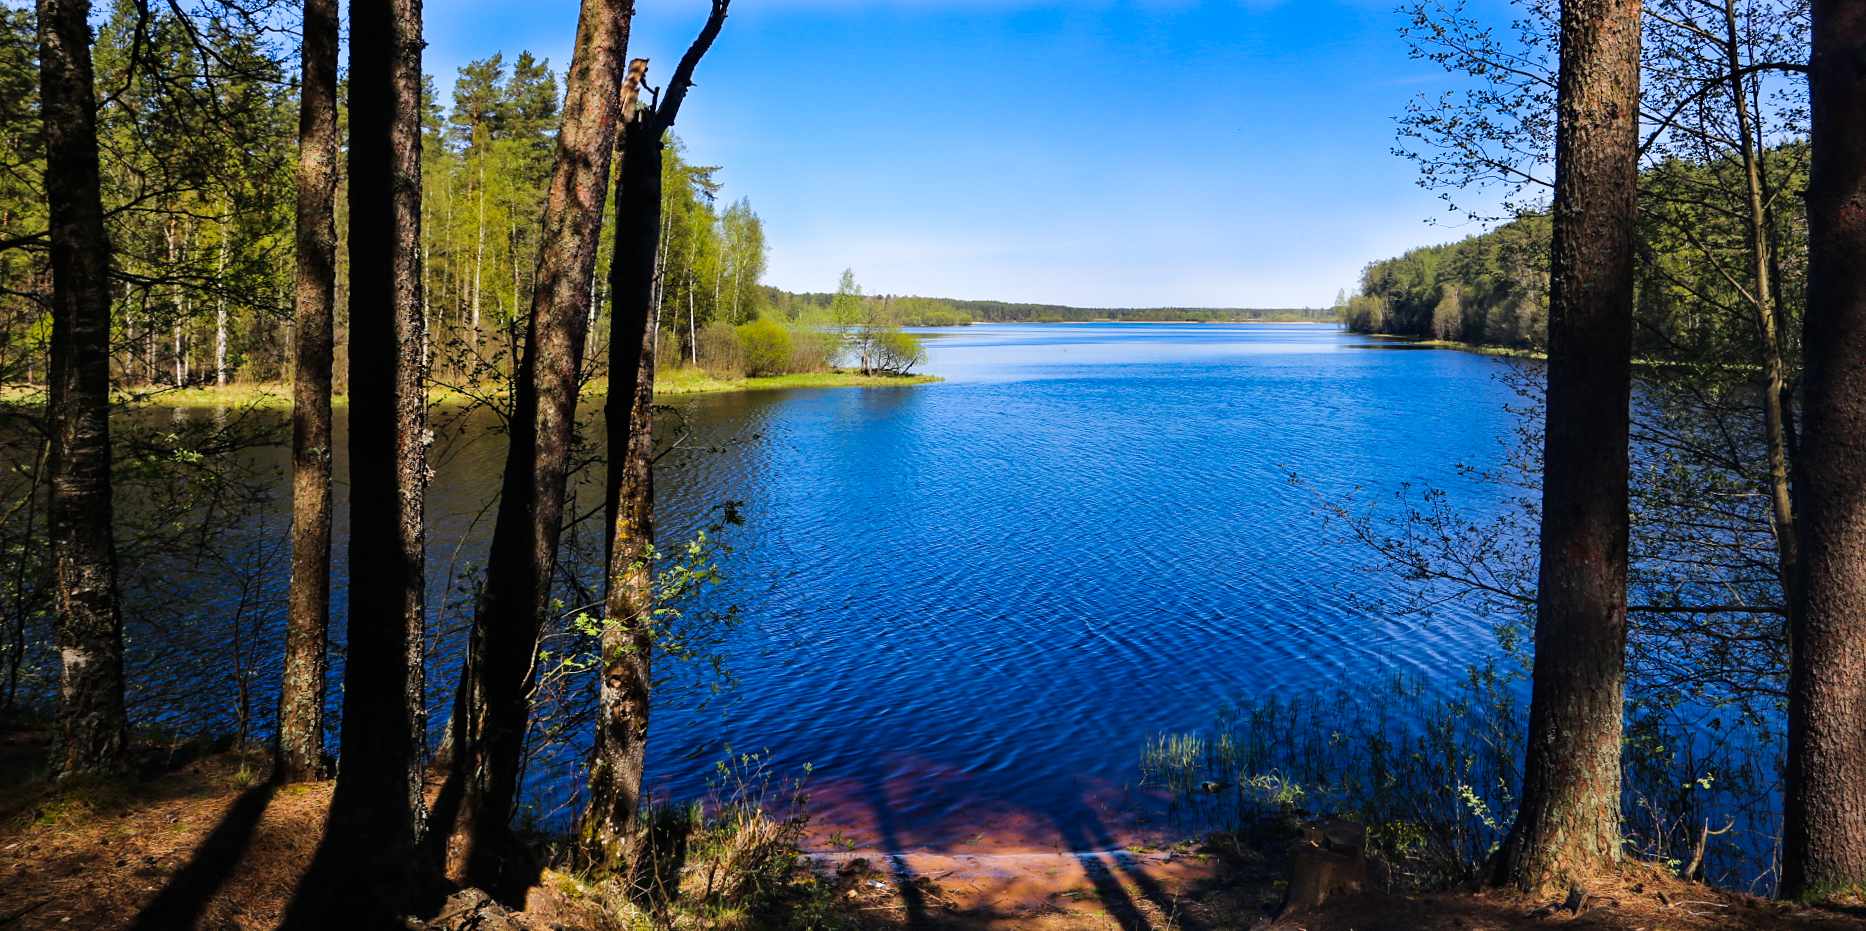 Озеро серебряное псковская область гдовский район